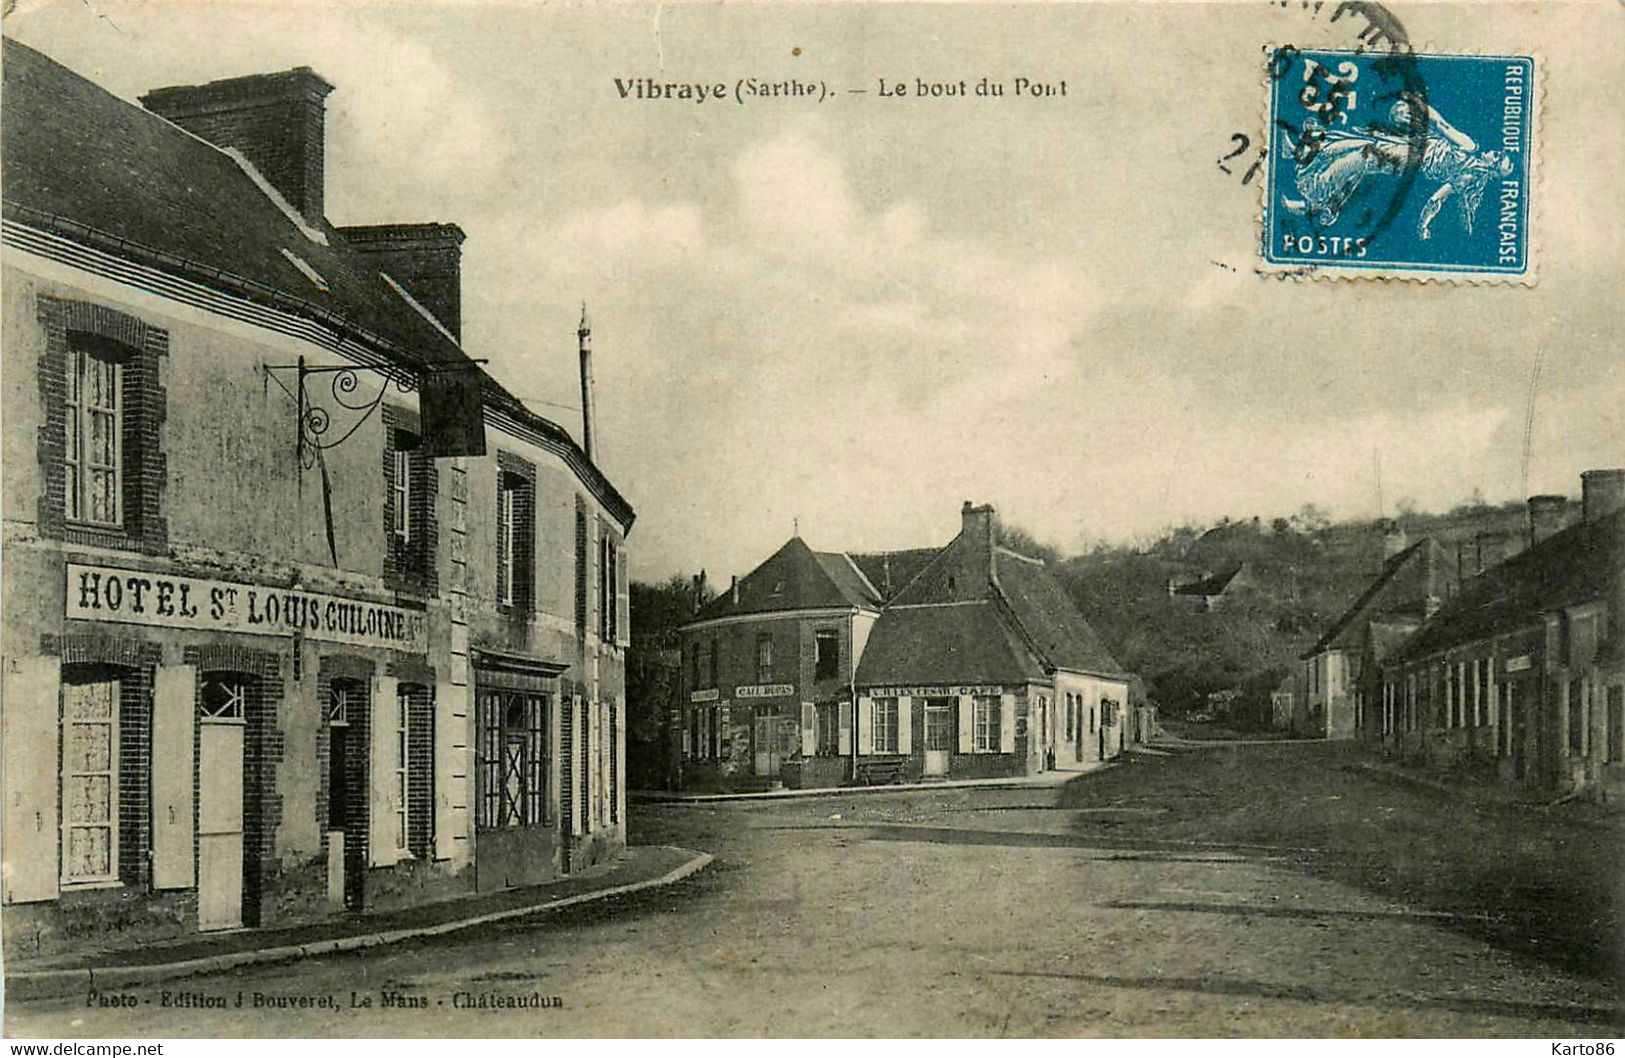 Vibraye * Route Et Le Bout Du Pont * Rue * Hôtel St Louis GUILOINE Propriétaire - Vibraye